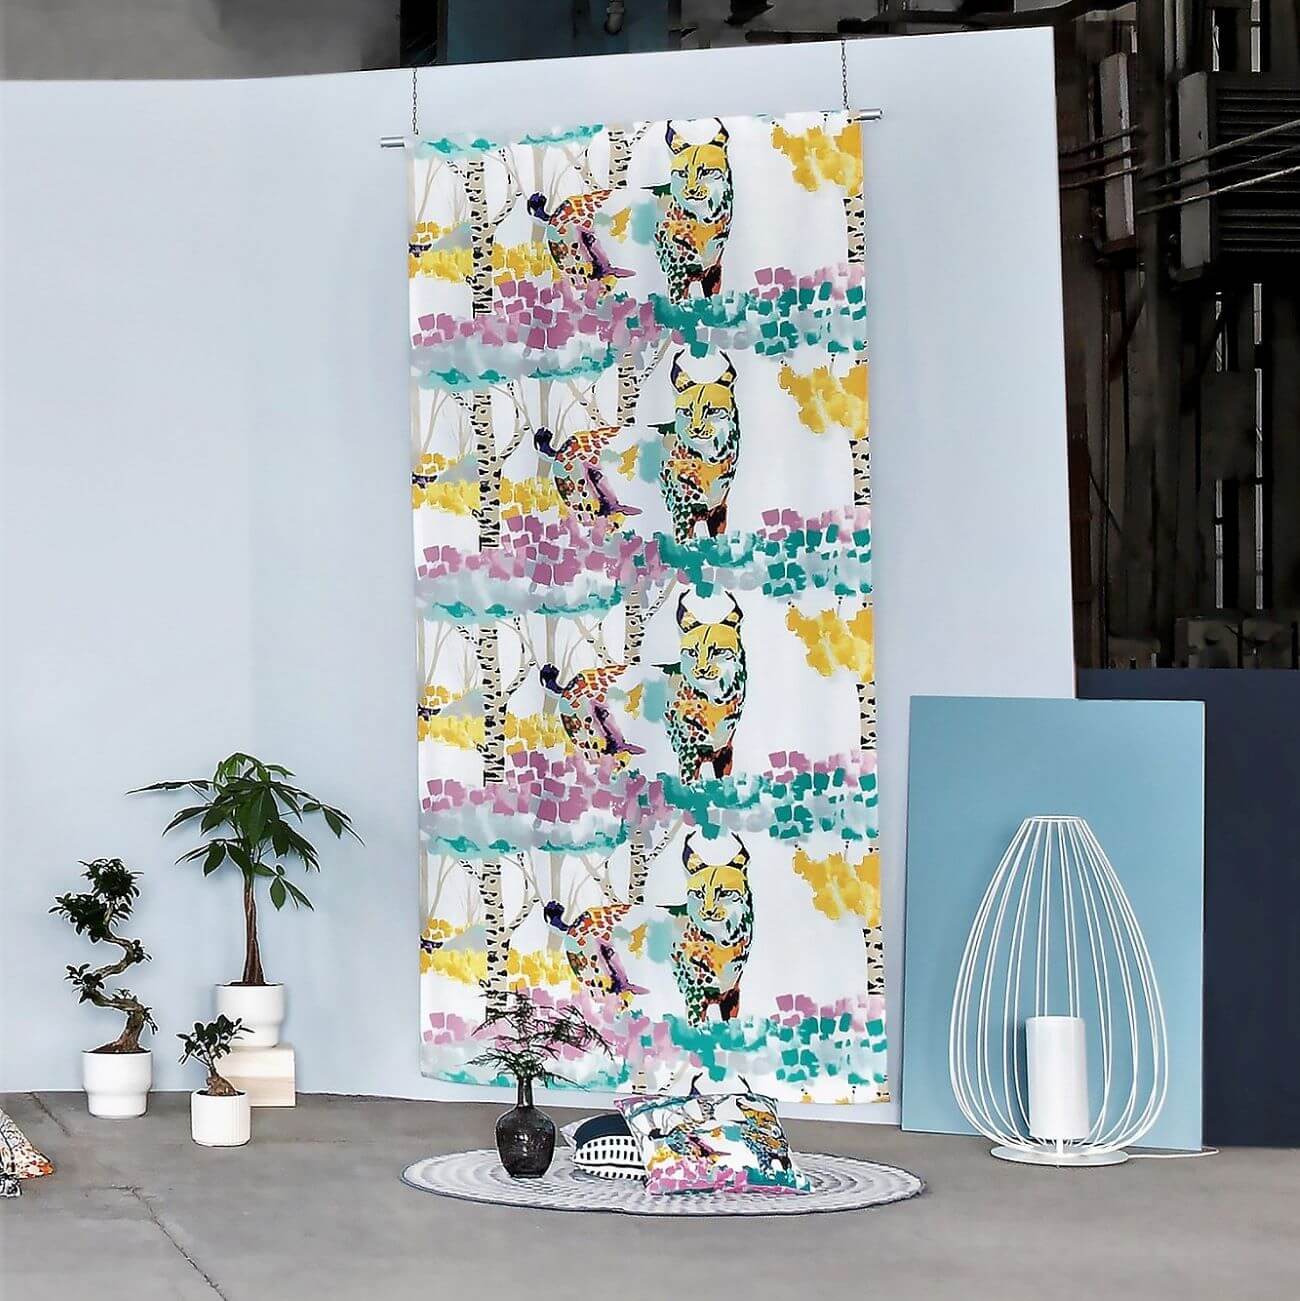 Zasłona kolorowa LUMI ILVES w malowany nowoczesny leśny krajobraz z kolorowym rysiem w aranżacji w studiu. Widok gotowej zasłony na taśmie dla dzieci przywieszonej na tle jasno niebieskiej ściany. Widoczny skandynawskie dywan, kolorowe poduszki, nowoczesna lampa oraz 4 kwiaty